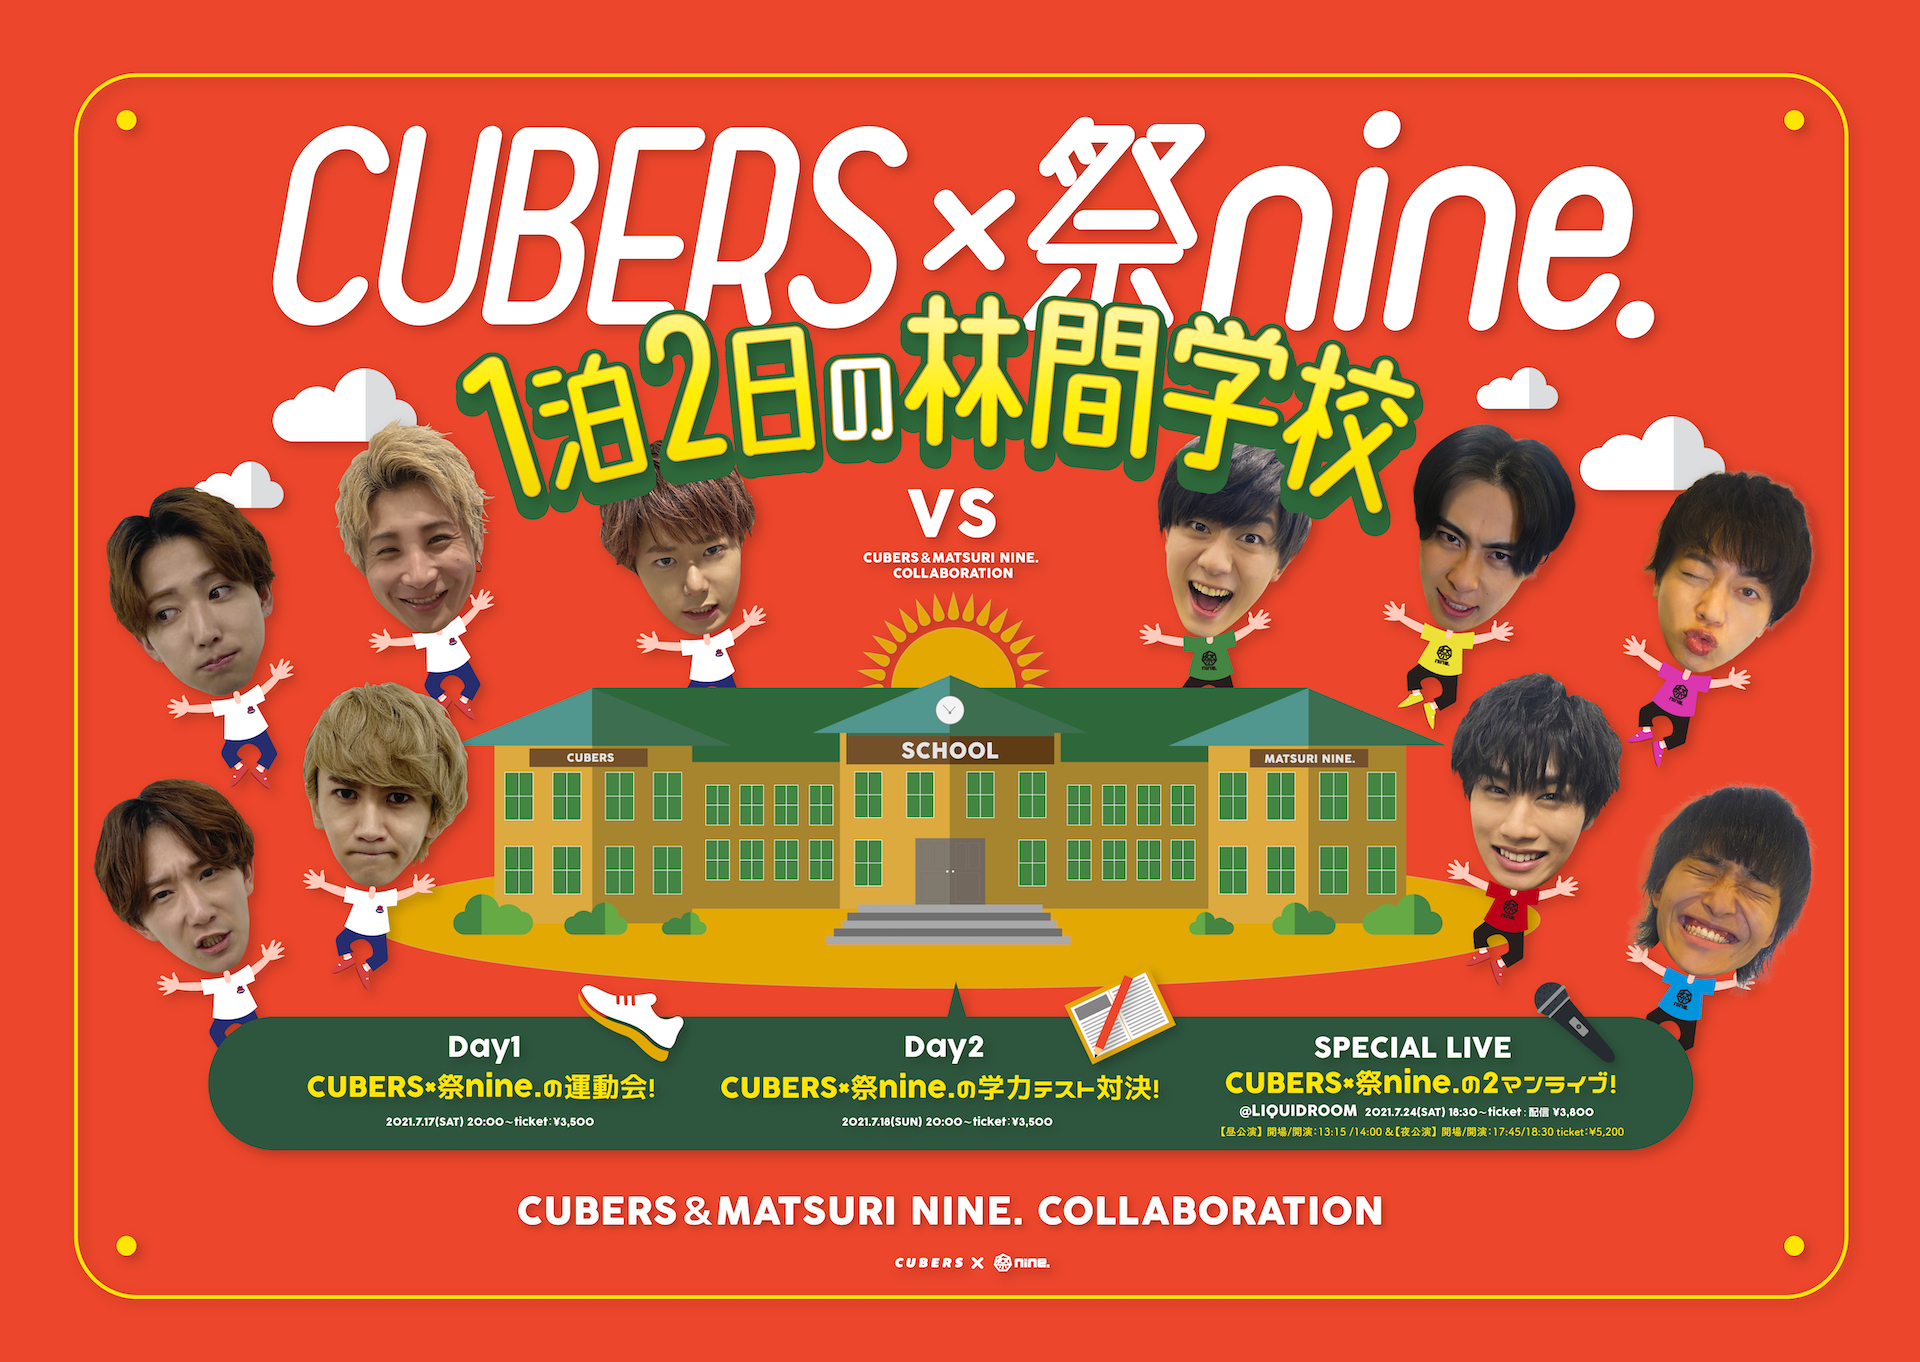 【NEWS】「CUBERS×祭nine. 1泊2日の林間学校」Day1,2の視聴チケットが6/14(月) 19時より販売スタート！